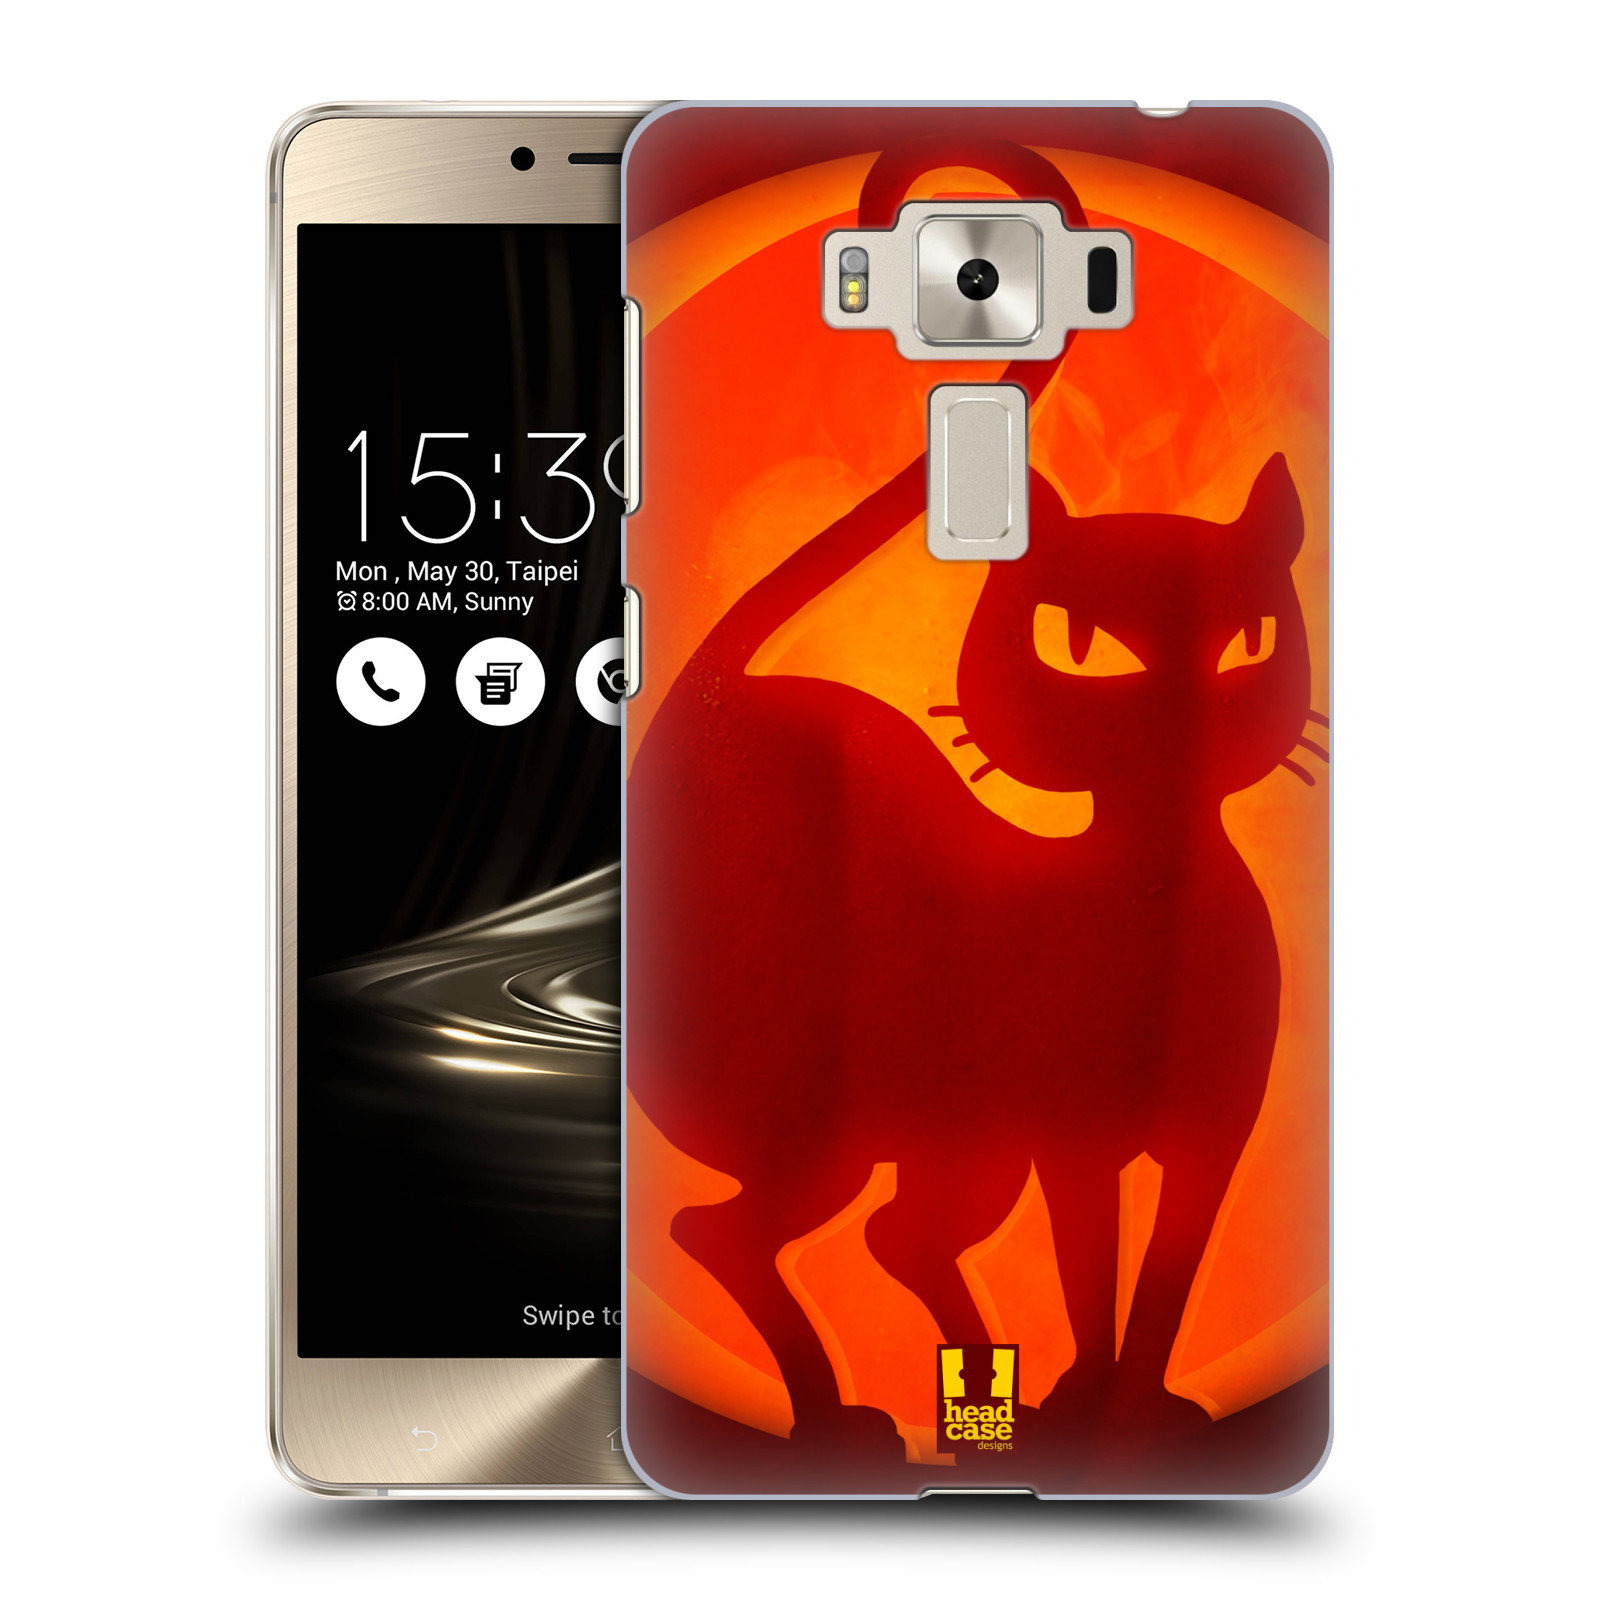 HEAD CASE plastový obal na mobil Asus Zenfone 3 DELUXE ZS550KL vzor odraz svítilny oranžová KOČKA